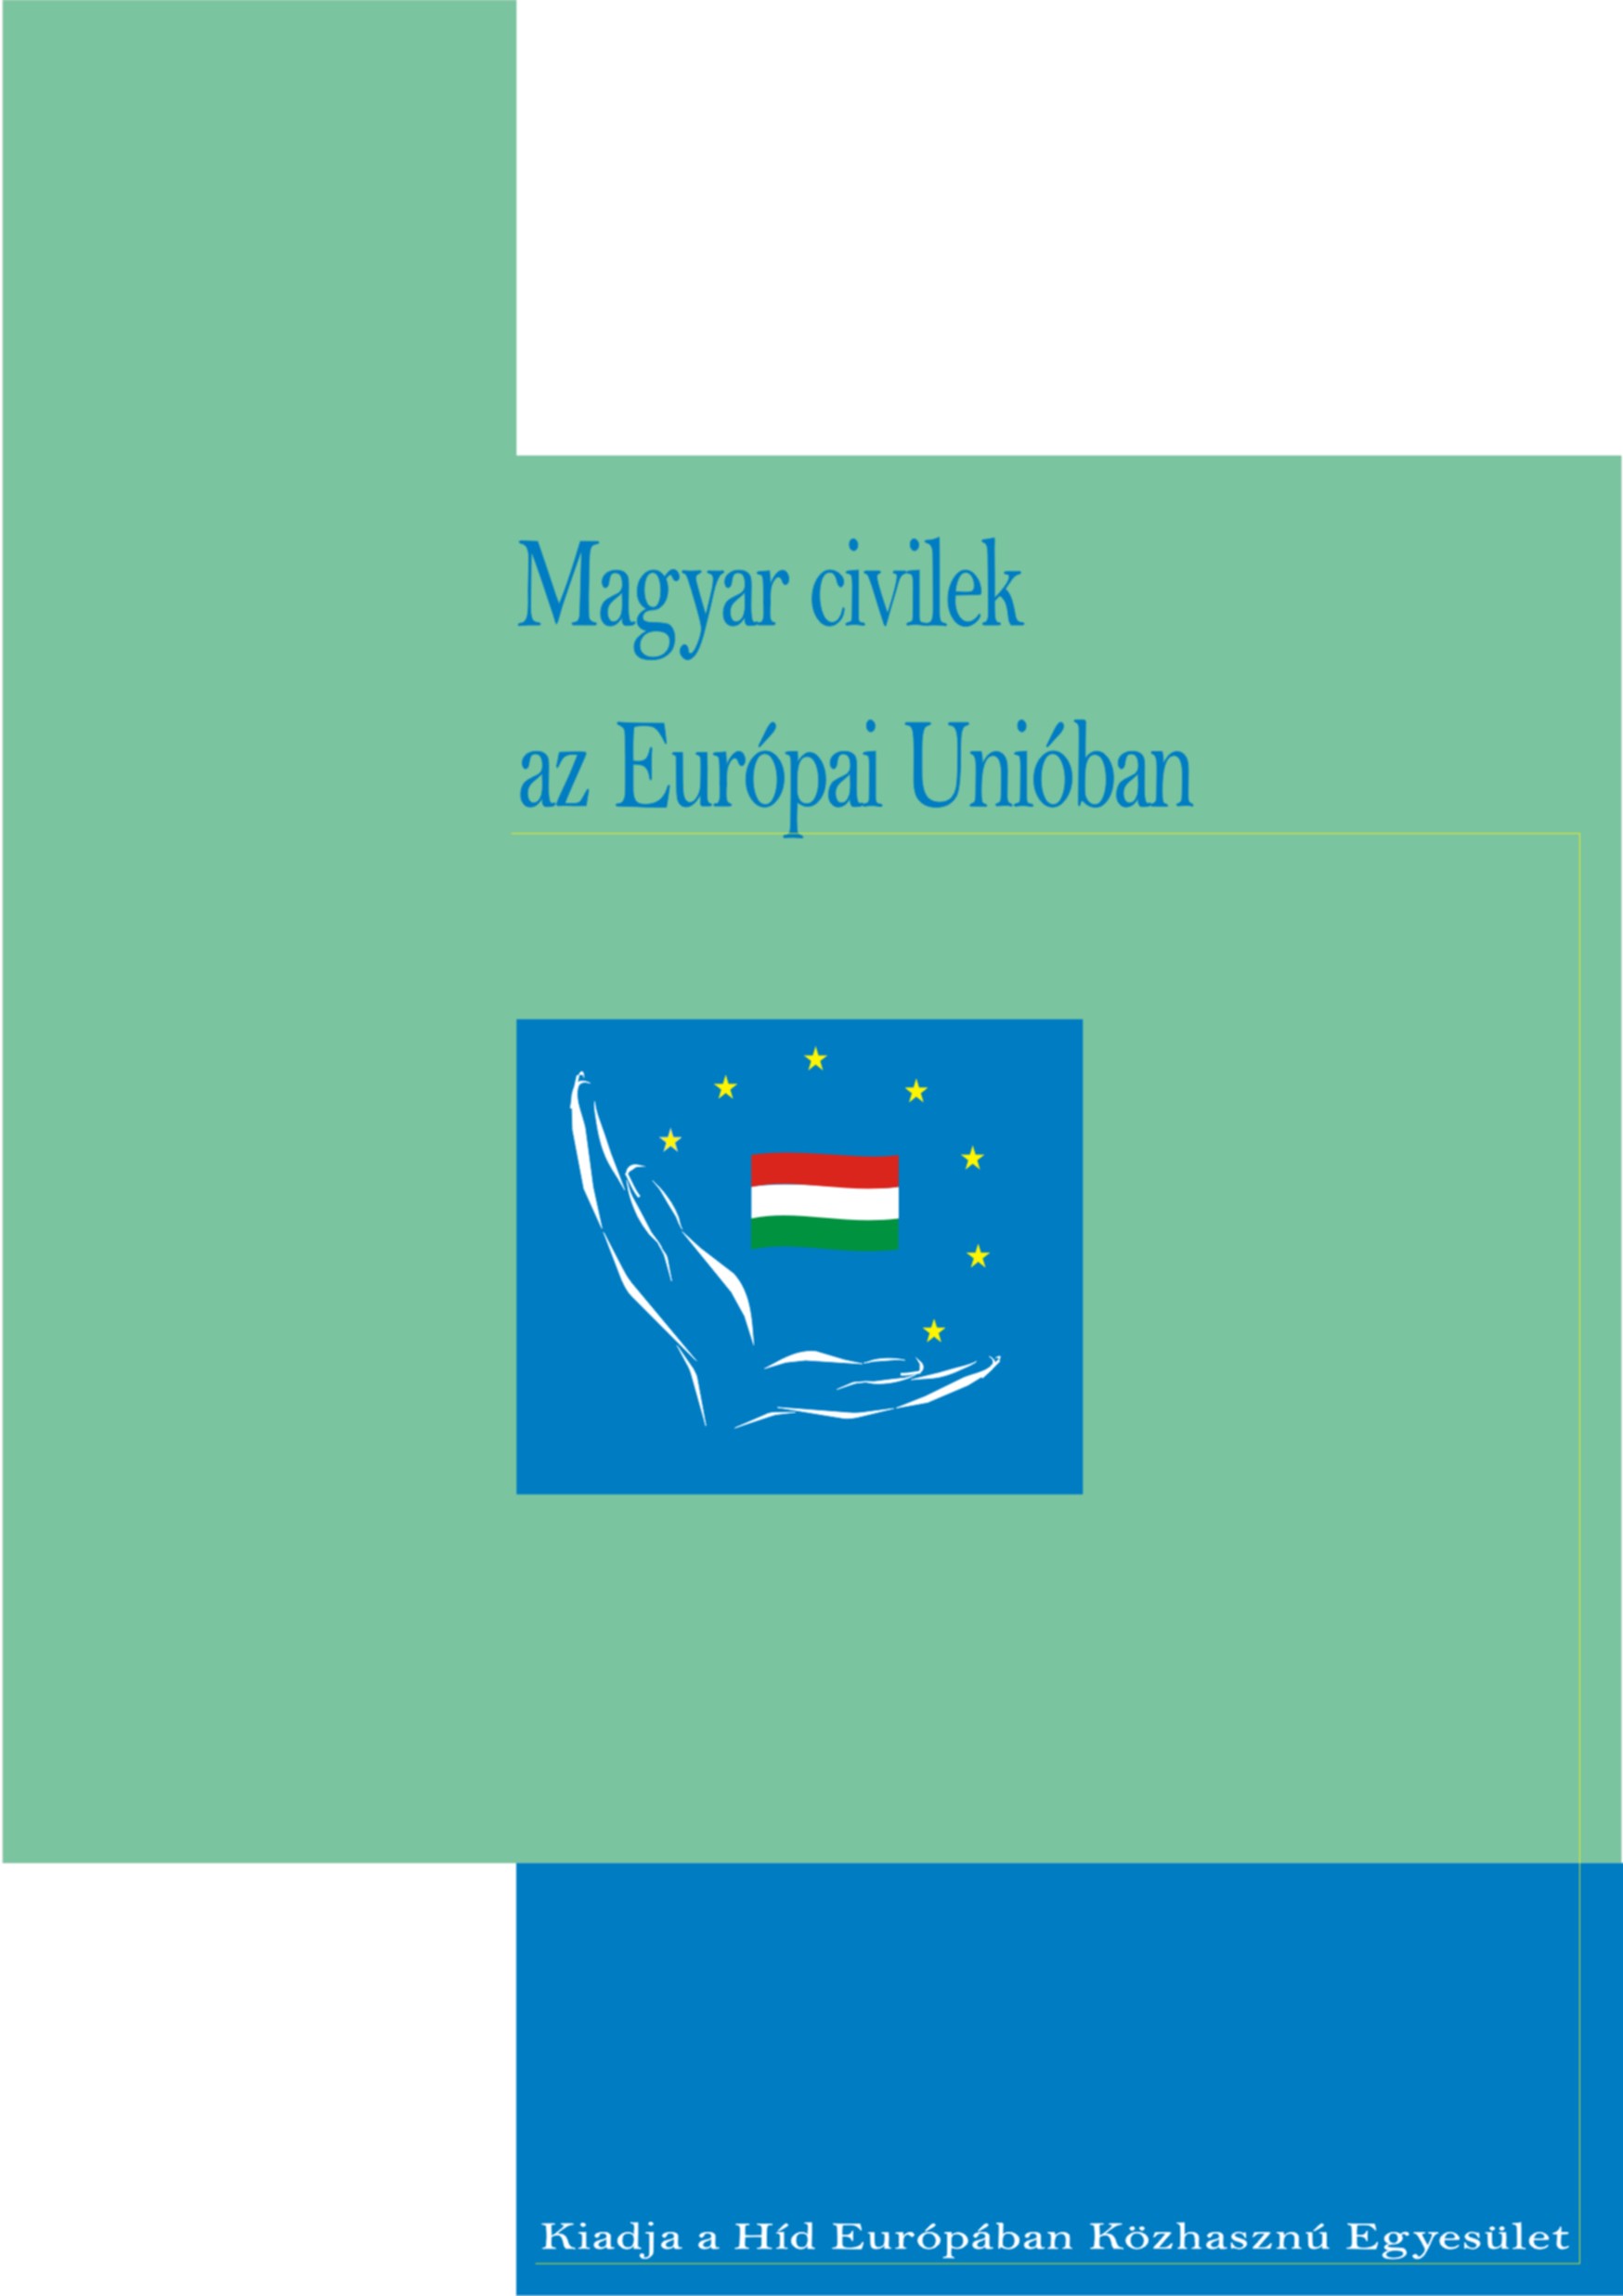 Magyar civilek az Európai Unióban